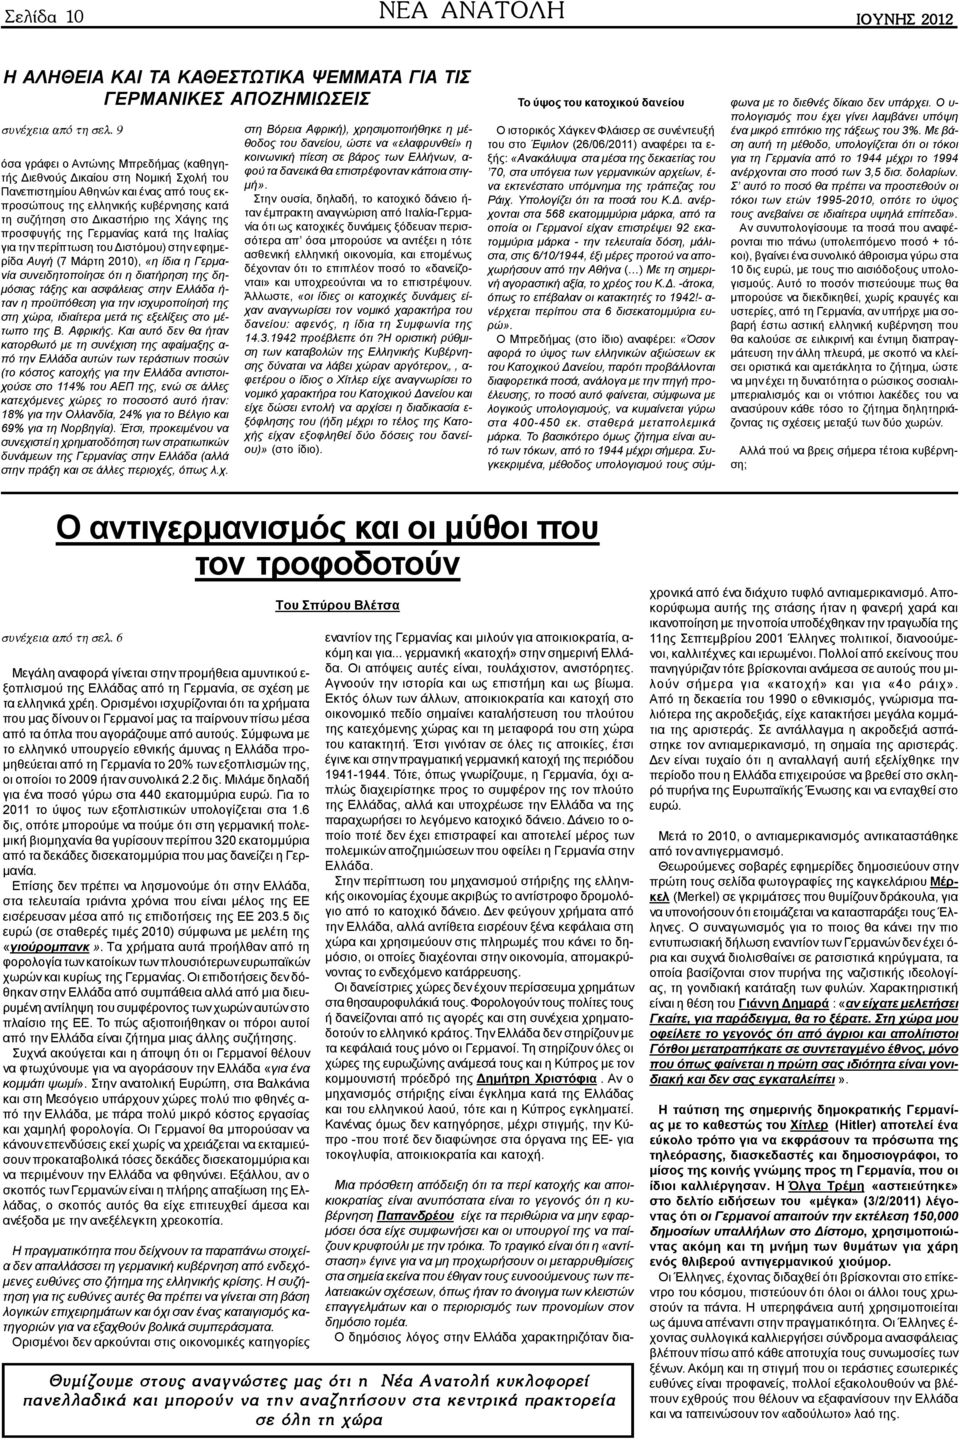 της προσφυγής της Γερμανίας κατά της Ιταλίας για την περίπτωση του Διστόμου) στην εφημερίδα Αυγή (7 Μάρτη 2010), «η ίδια η Γερμανία συνειδητοποίησε ότι η διατήρηση της δημόσιας τάξης και ασφάλειας